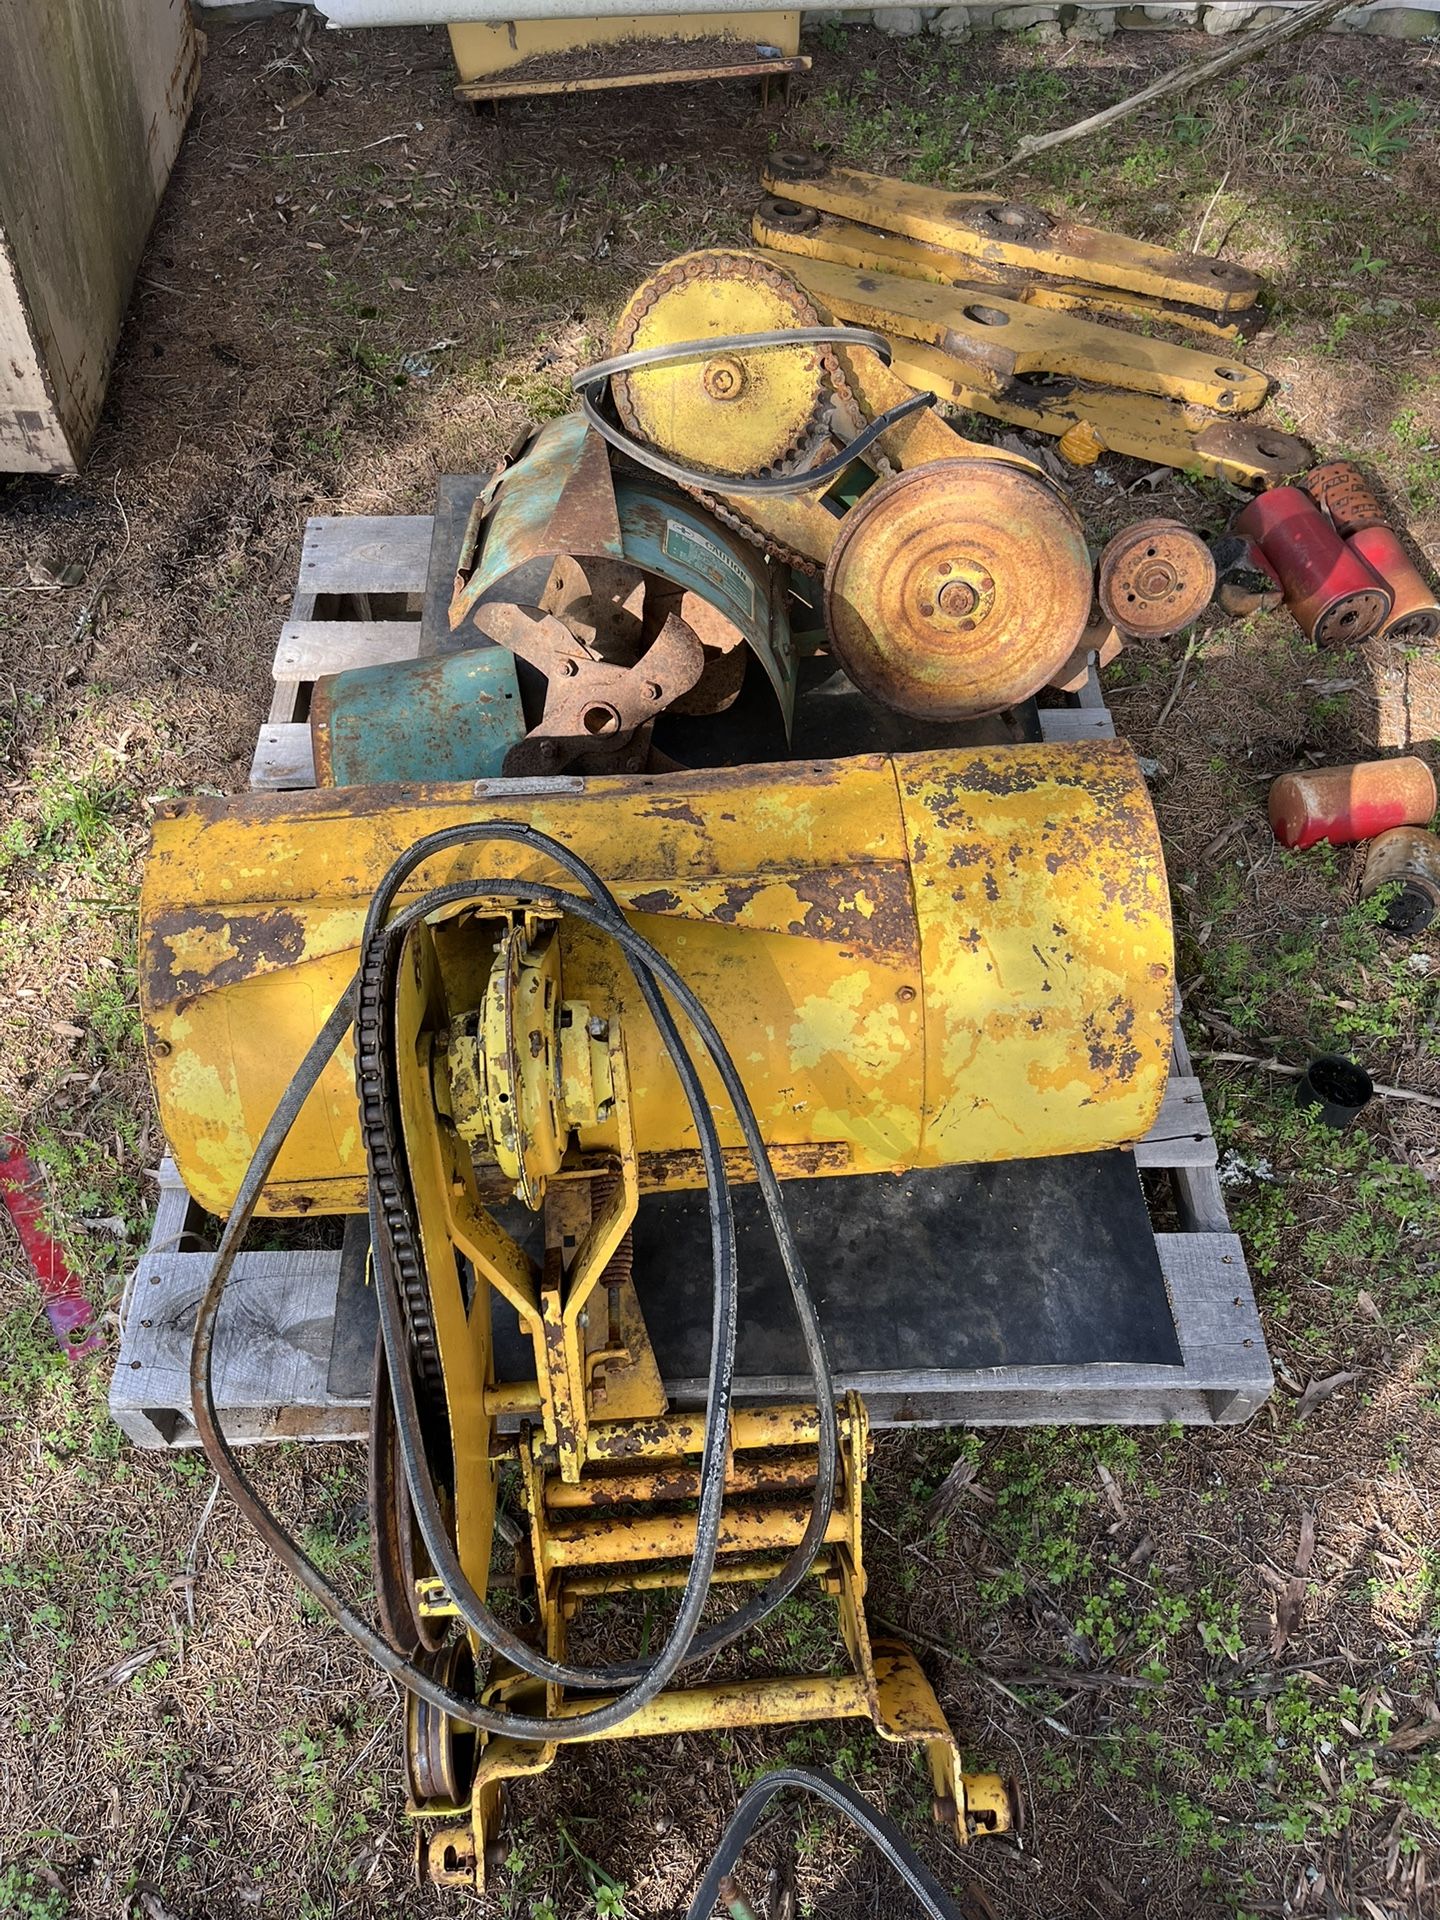 John Deere garden Tractor implements